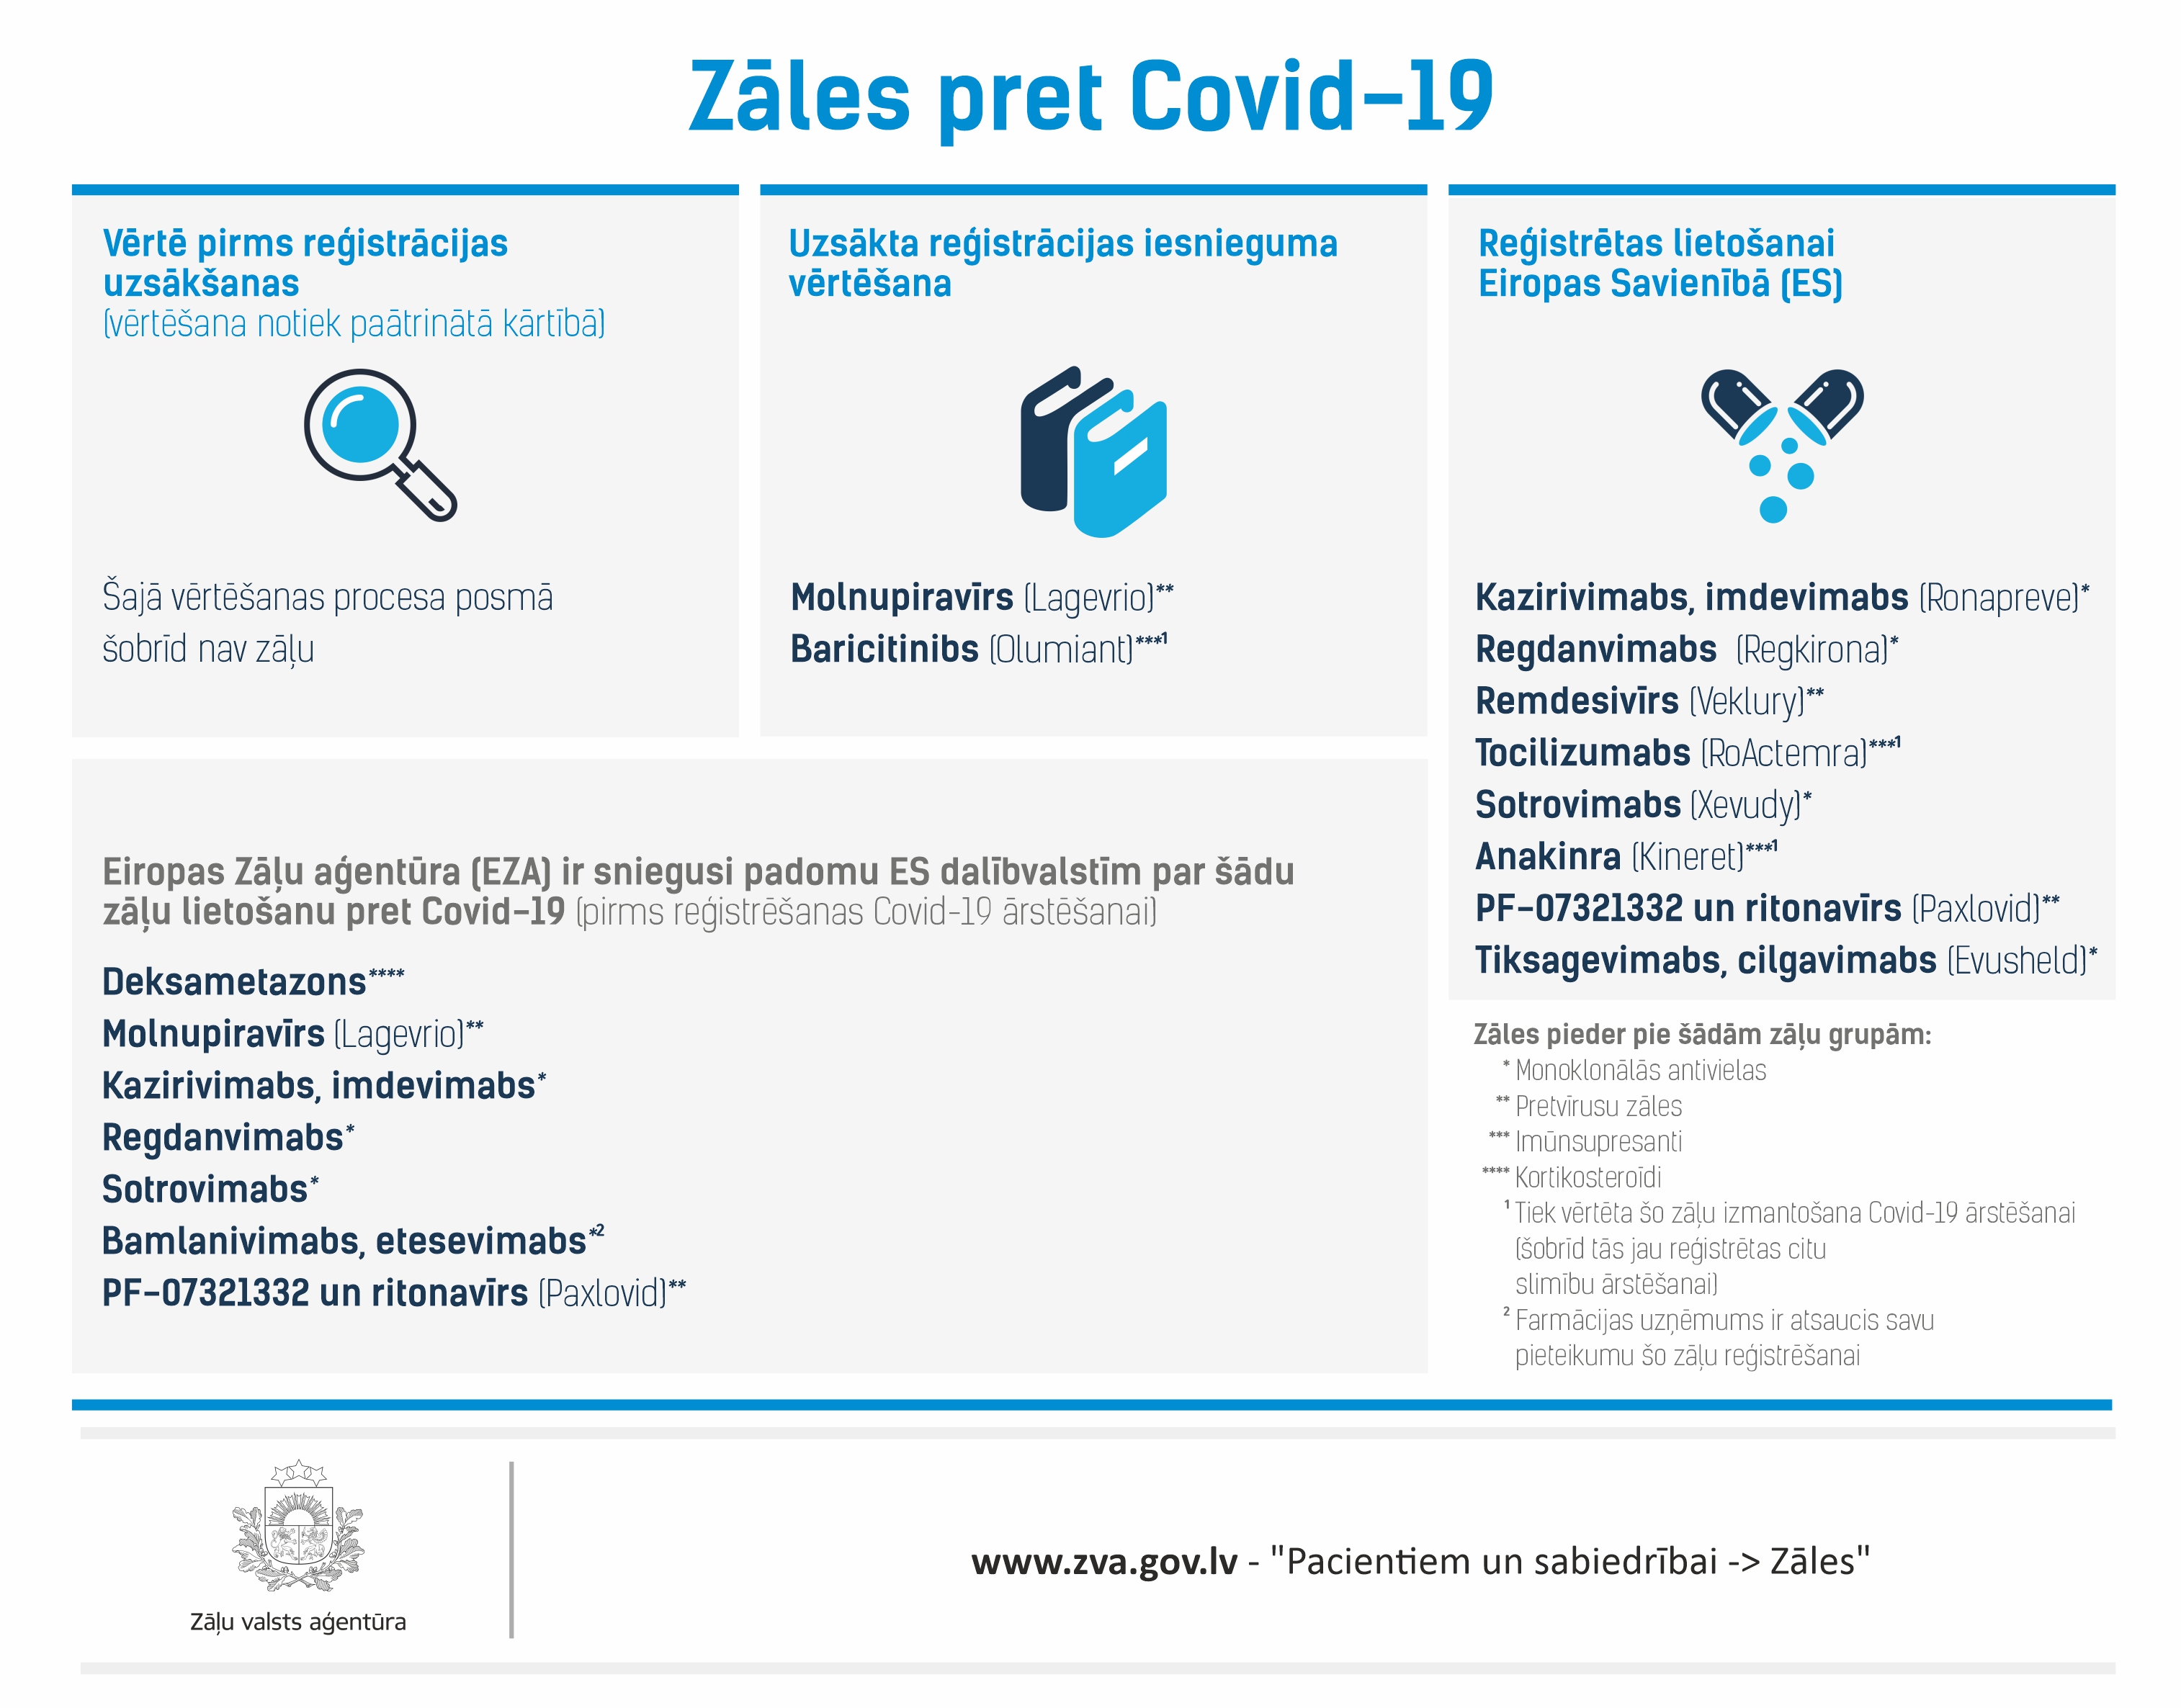 Infografika, kurā redzama informācija par reģistrācijas procesā esošajām un reģistrētajām zālēm pret Covid-19